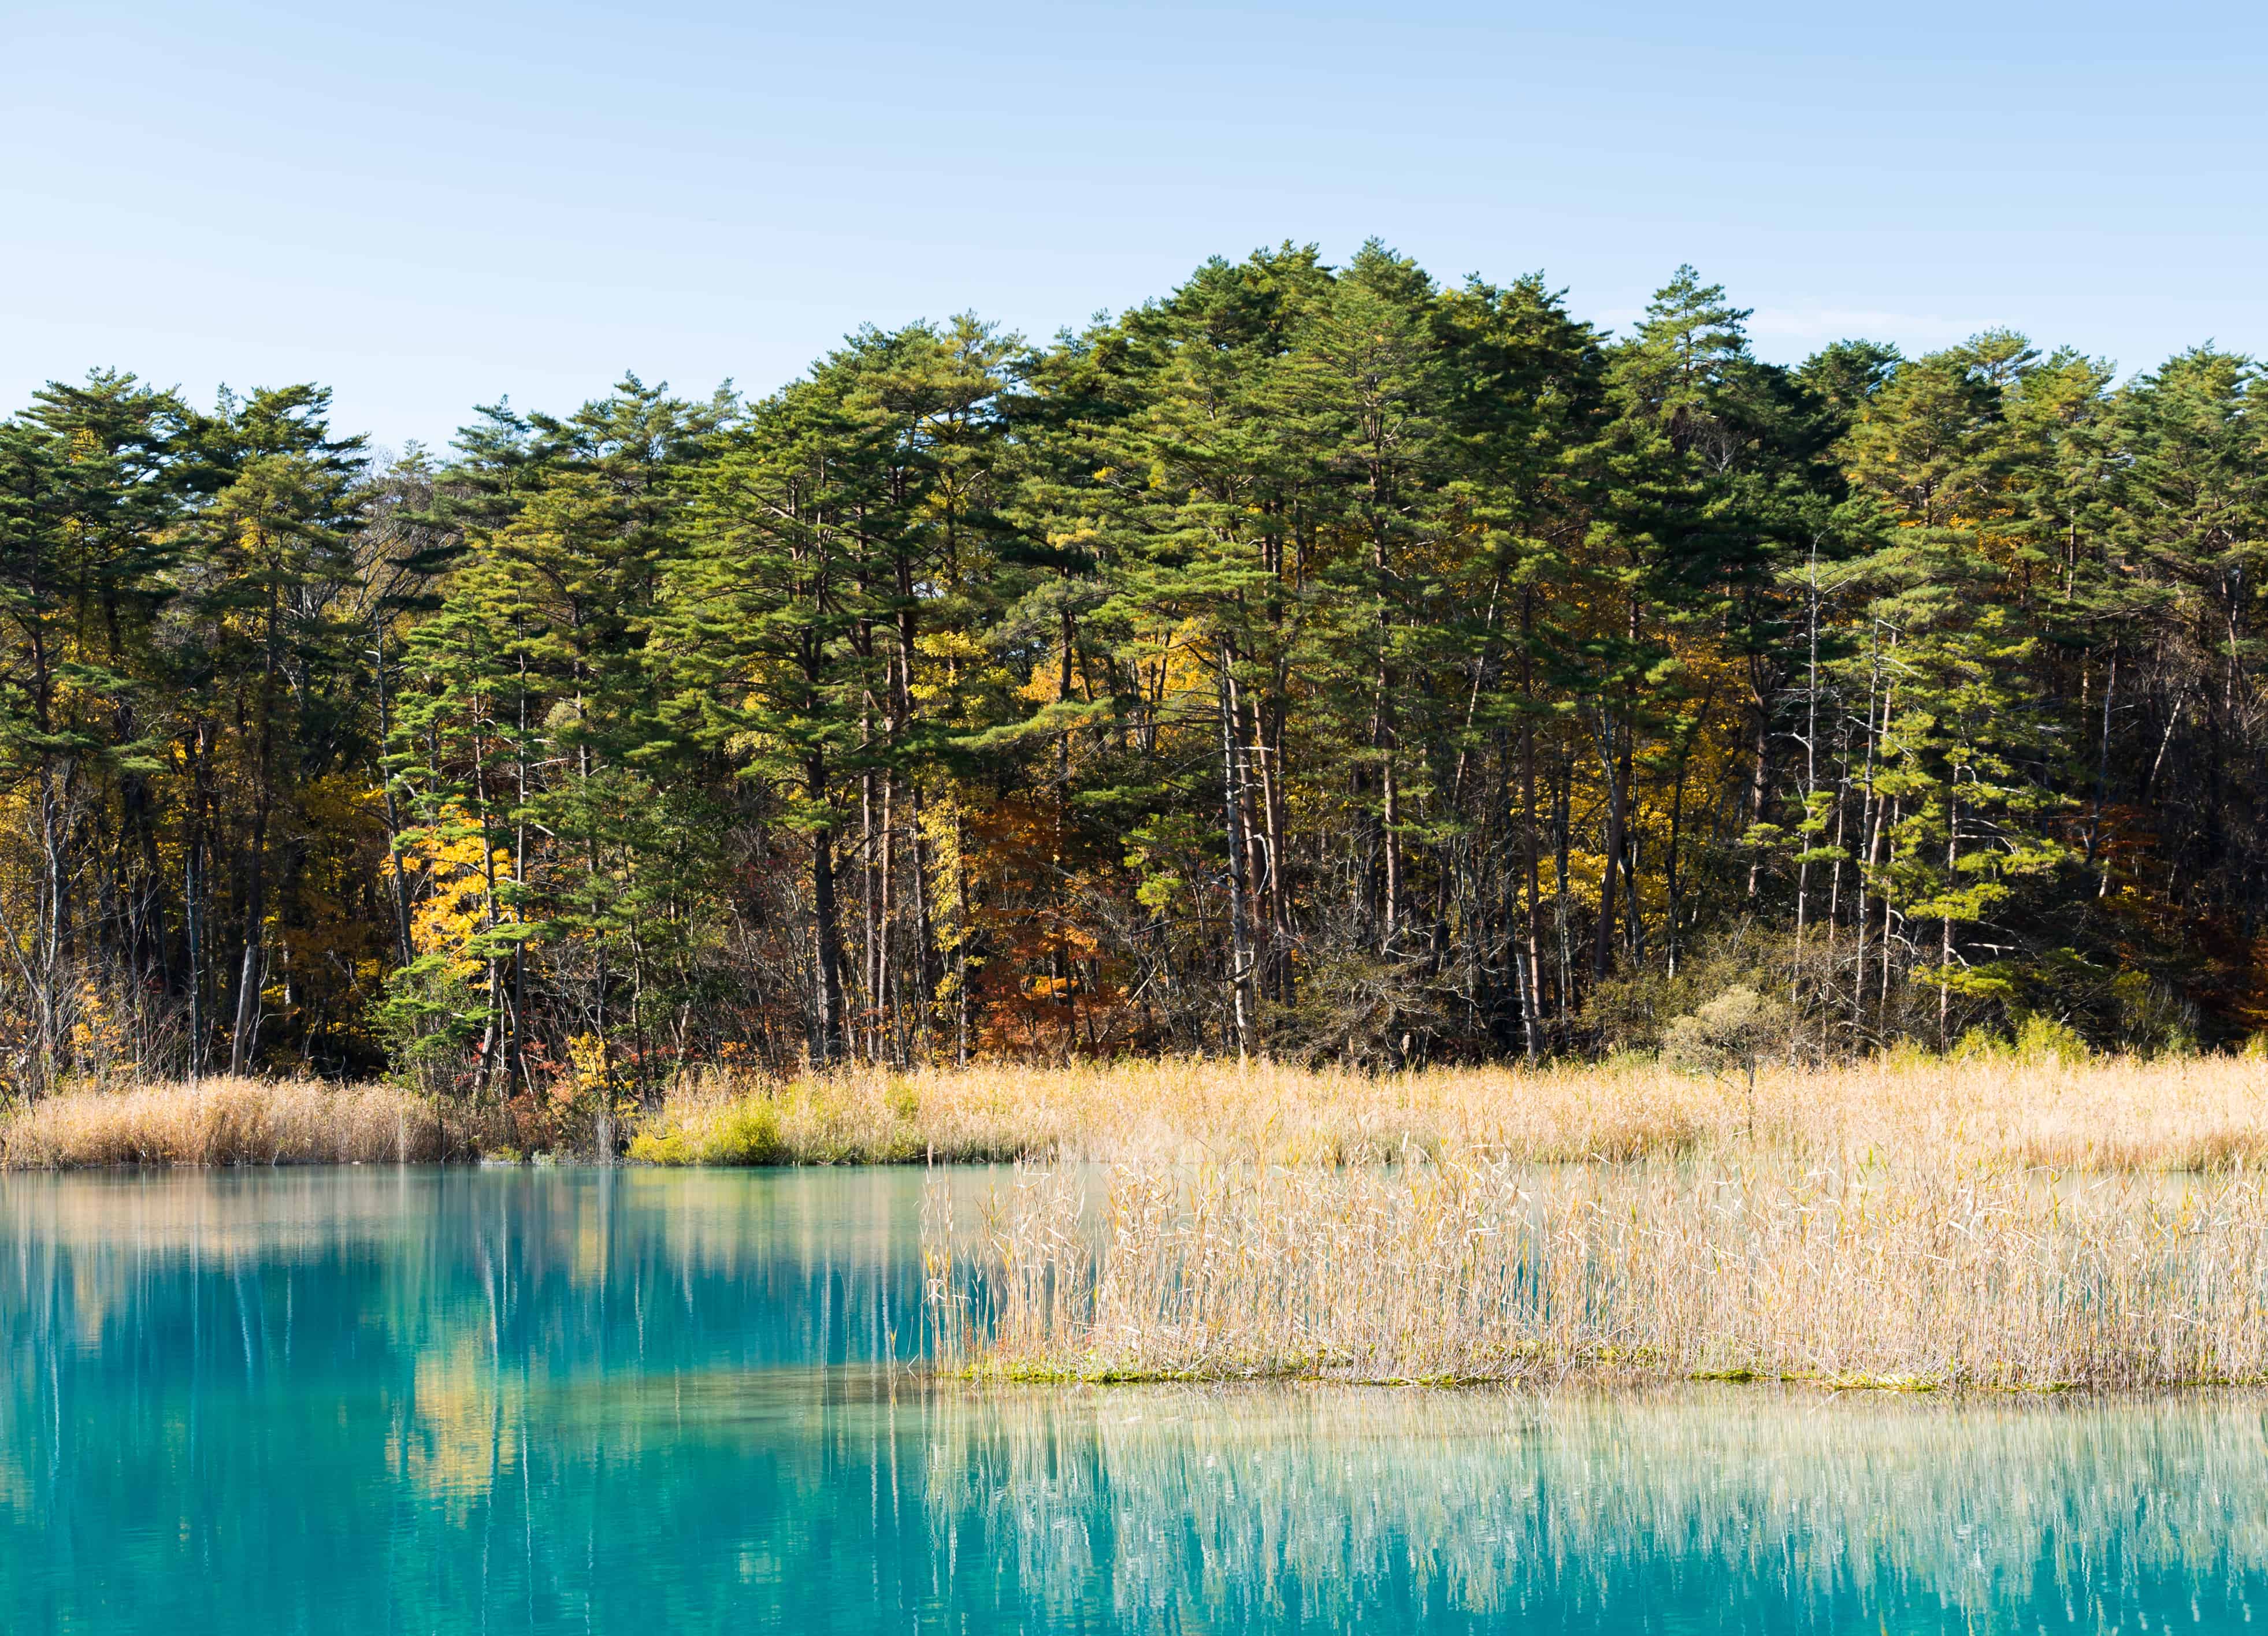 Goshikinuma pond's aquamarine water surrounded by forest.